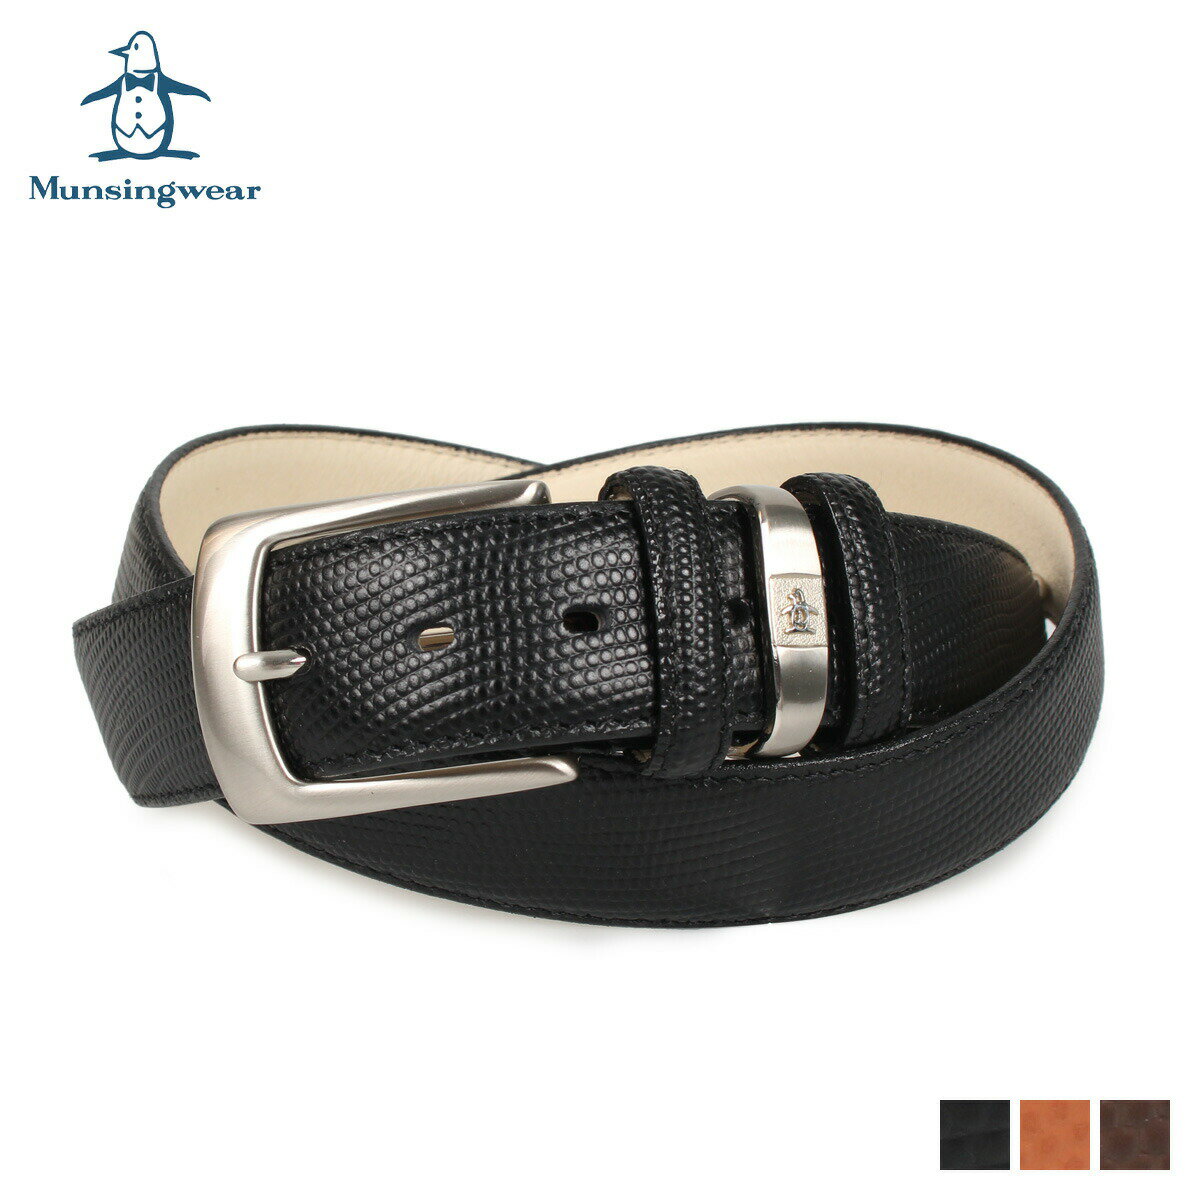 レザーベルト Munsingwear LEATHER BELT マンシングウェア ベルト レザーベルト メンズ 本革 バックル ブラック ブラウン チョコ 黒 MU-1520